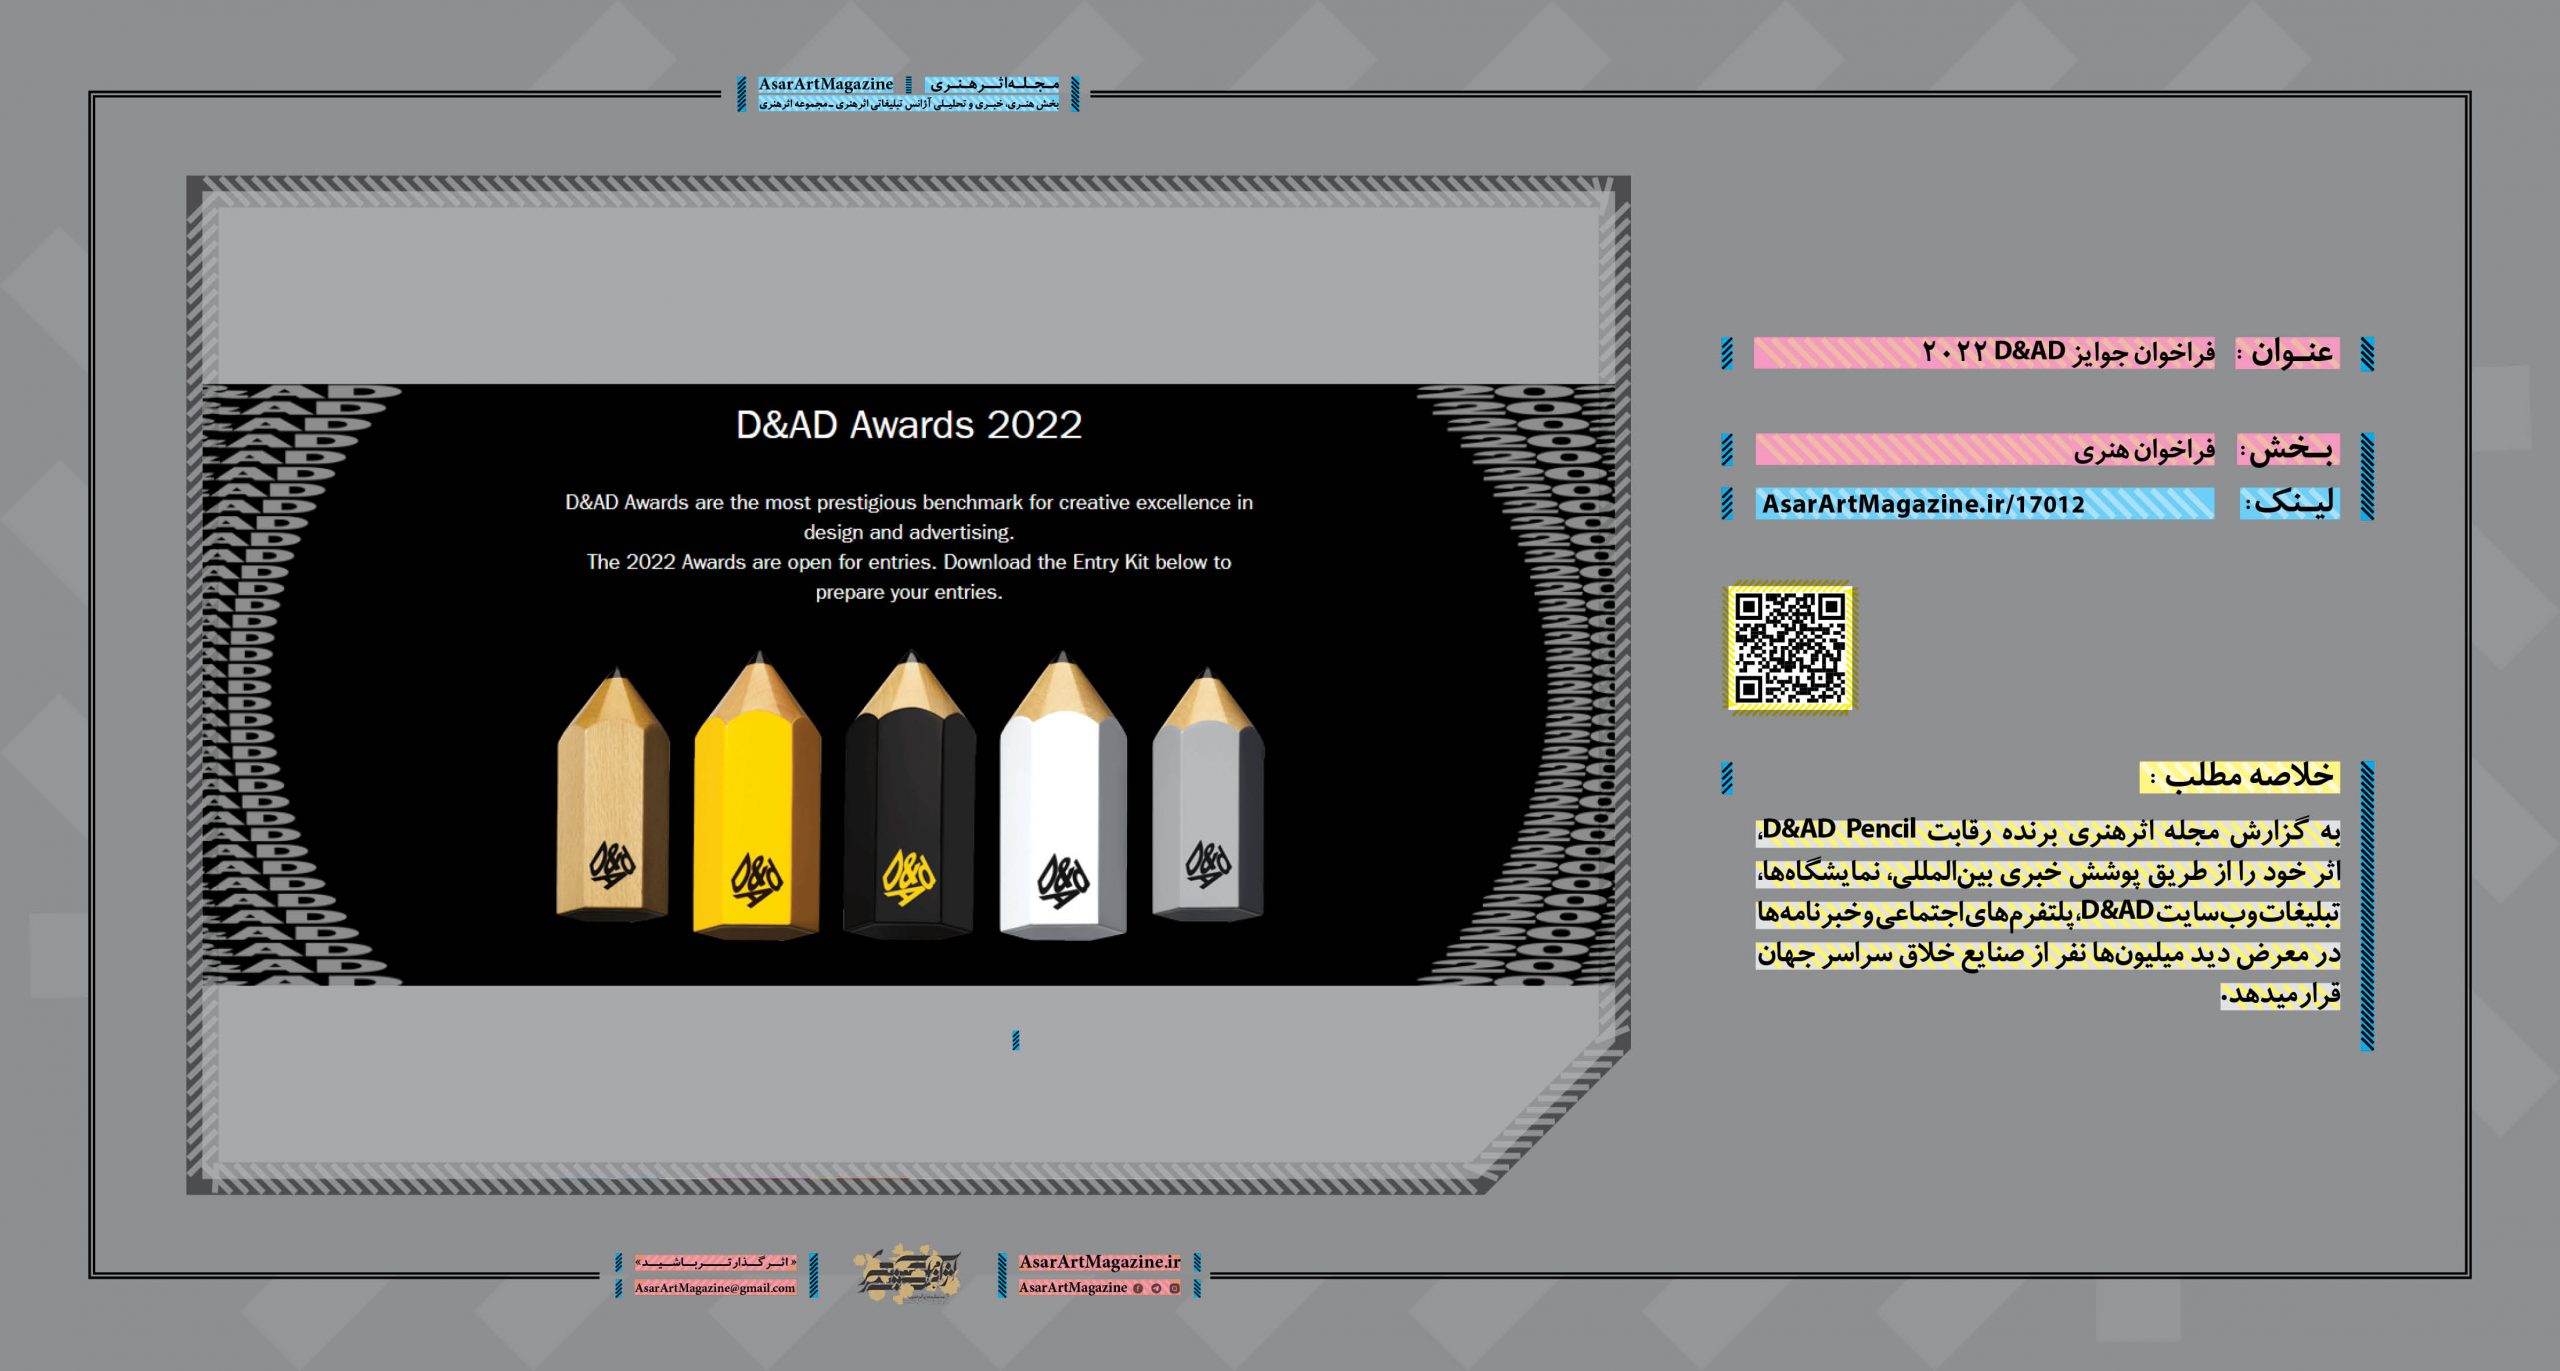 فراخوان جوایز D&AD ۲۰۲۲  |  مجله اثرهنری، بخش هنری، خبری و تحلیلی مجموعه اثرهنری | مجله اثر هنری ـ «اثرگذارتر باشید»